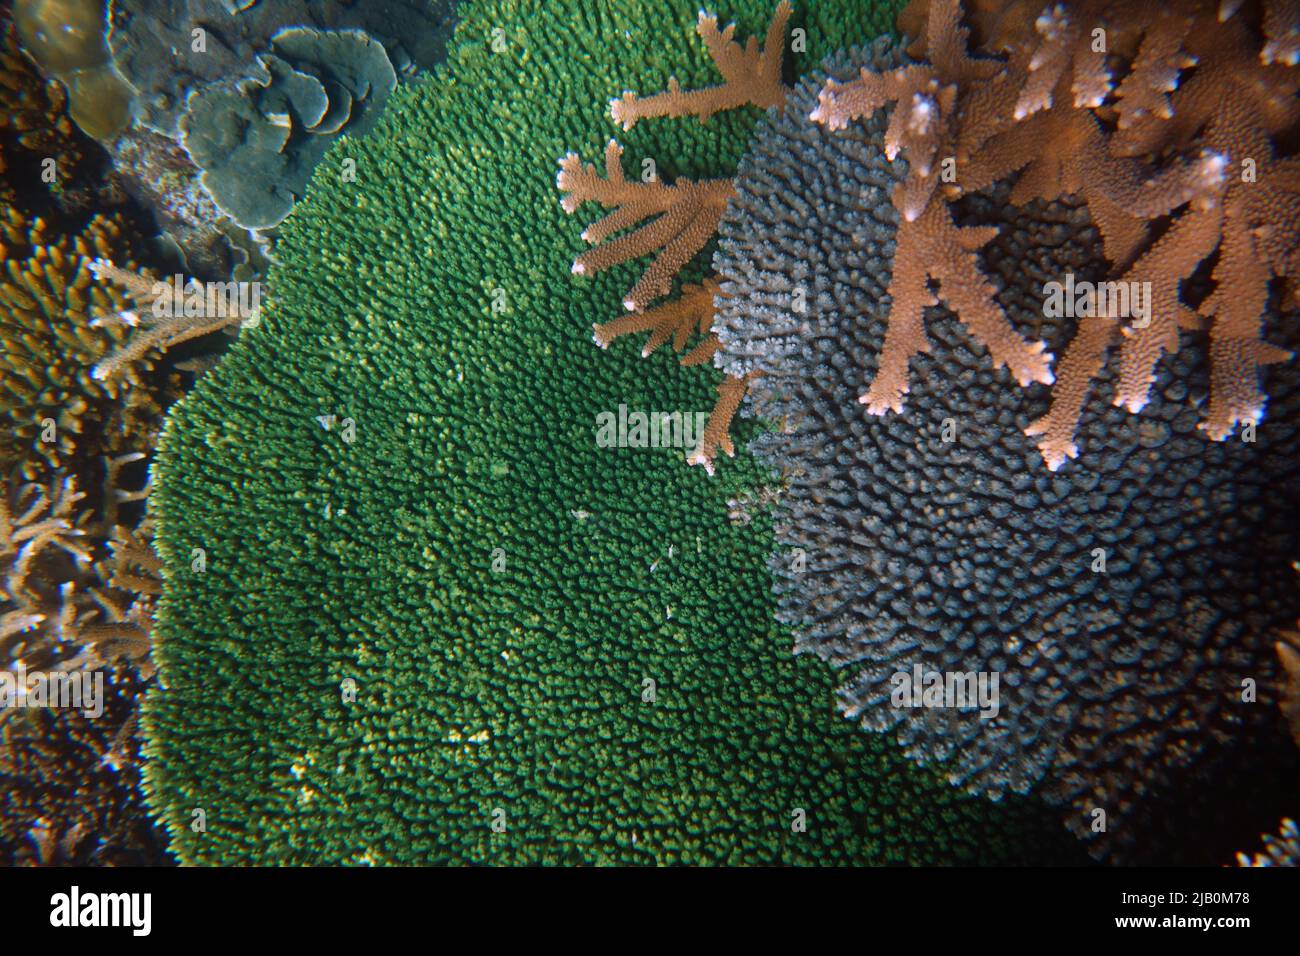 Diversidad de Acropora y otras especies coralinas en arrecifes de alta diversidad y cubierta, Kent Island, Barcard Islands Group, Great Barrier Reef, Queensland, Au Foto de stock